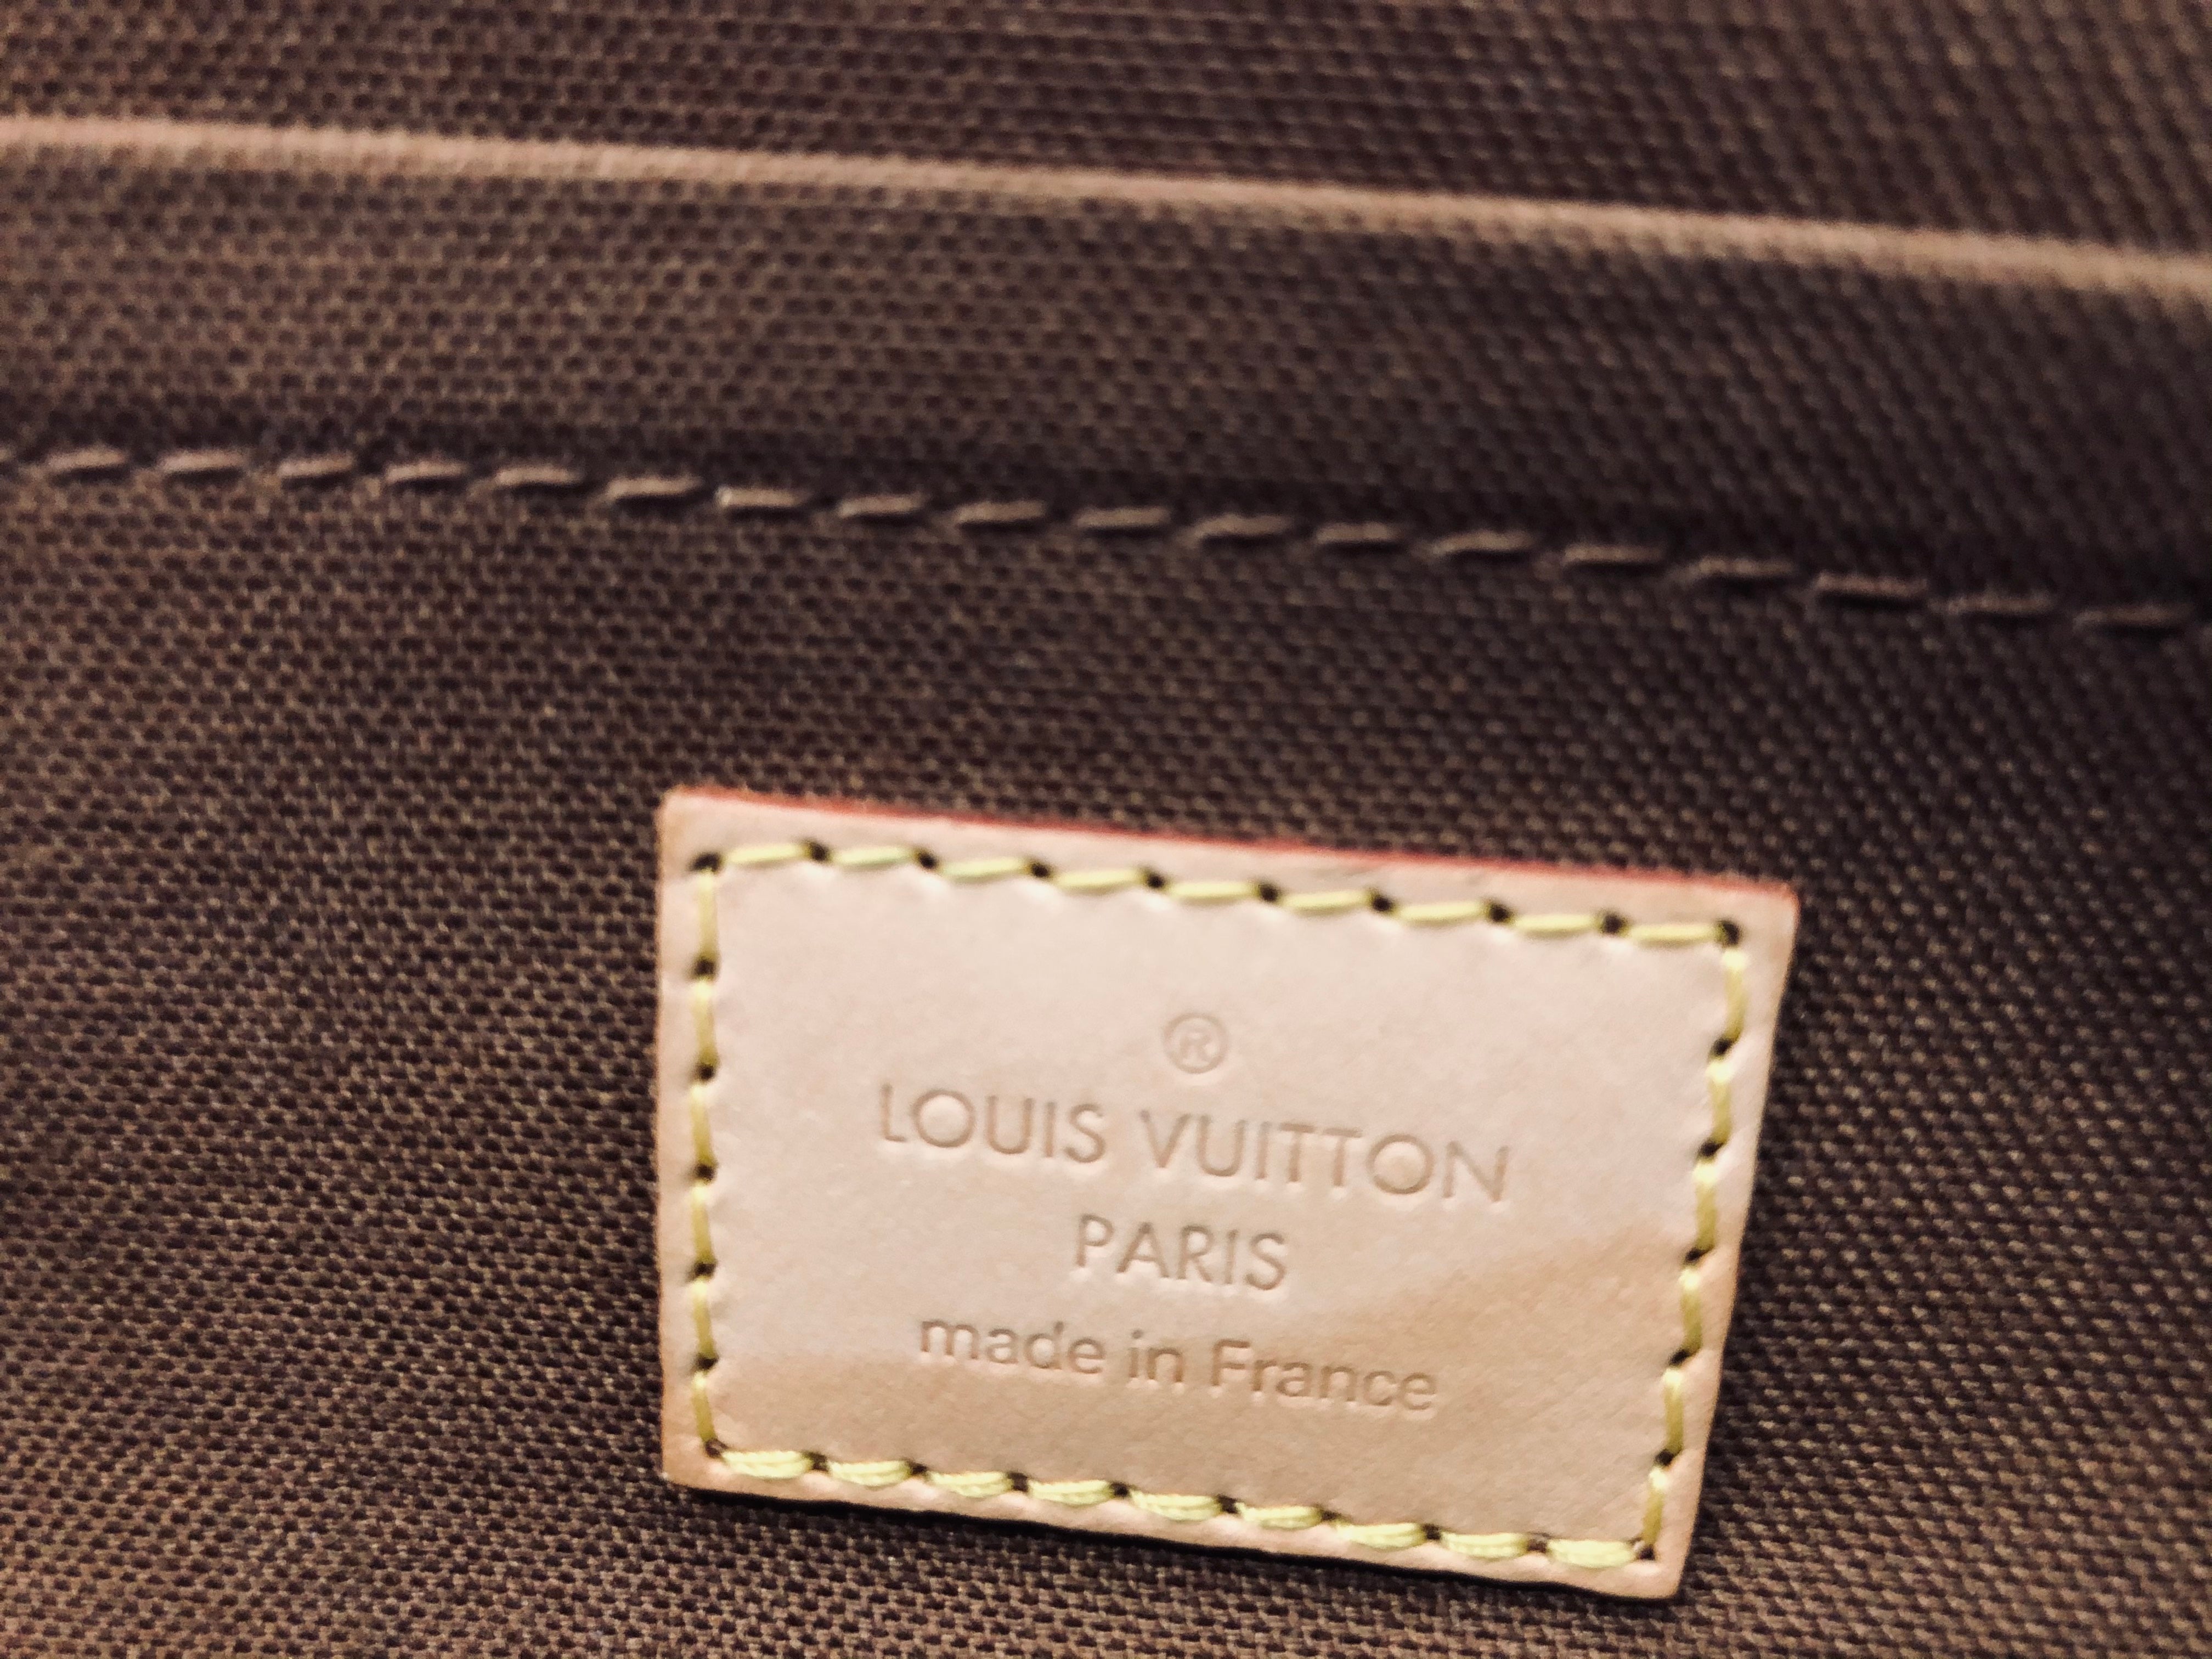 Louis Vuitton Limited Edition Monogram Canvas Riveting Tote Louis Vuitton